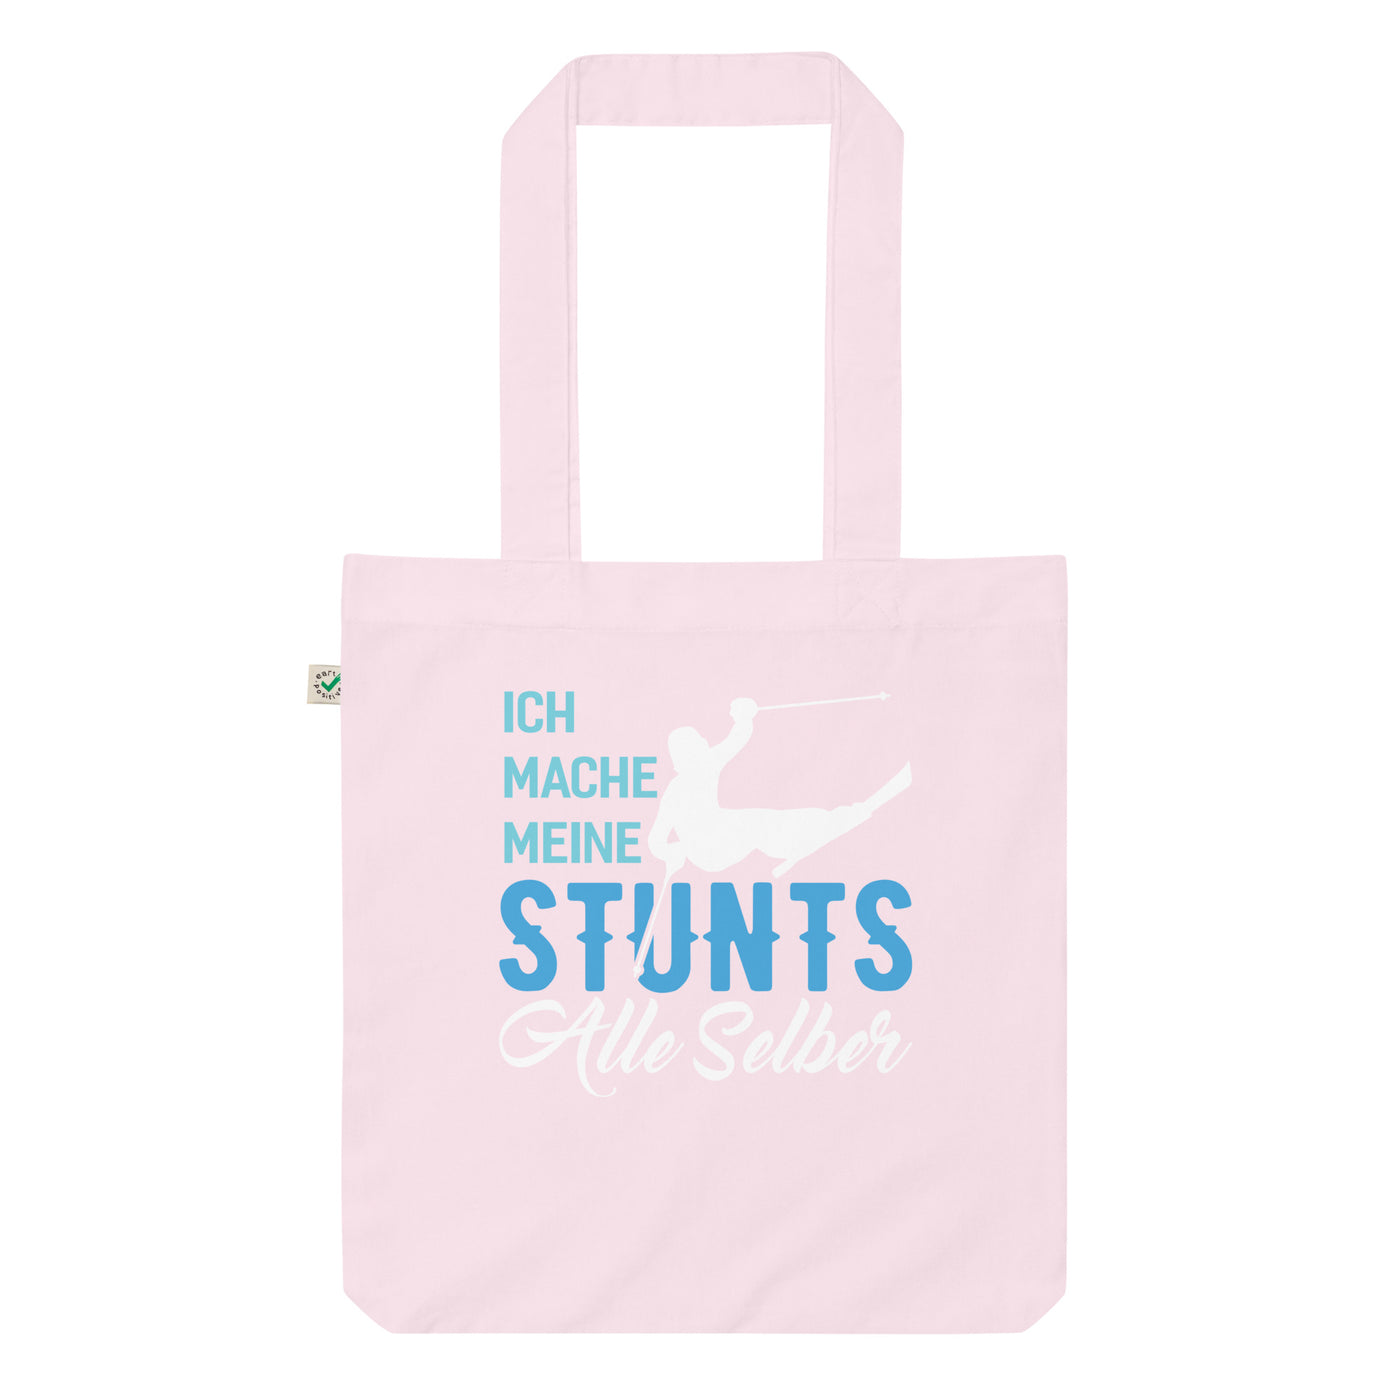 Ich Mache Meine Stunts Alle Selber - (S.K) - Organic Einkaufstasche klettern Candy Pink